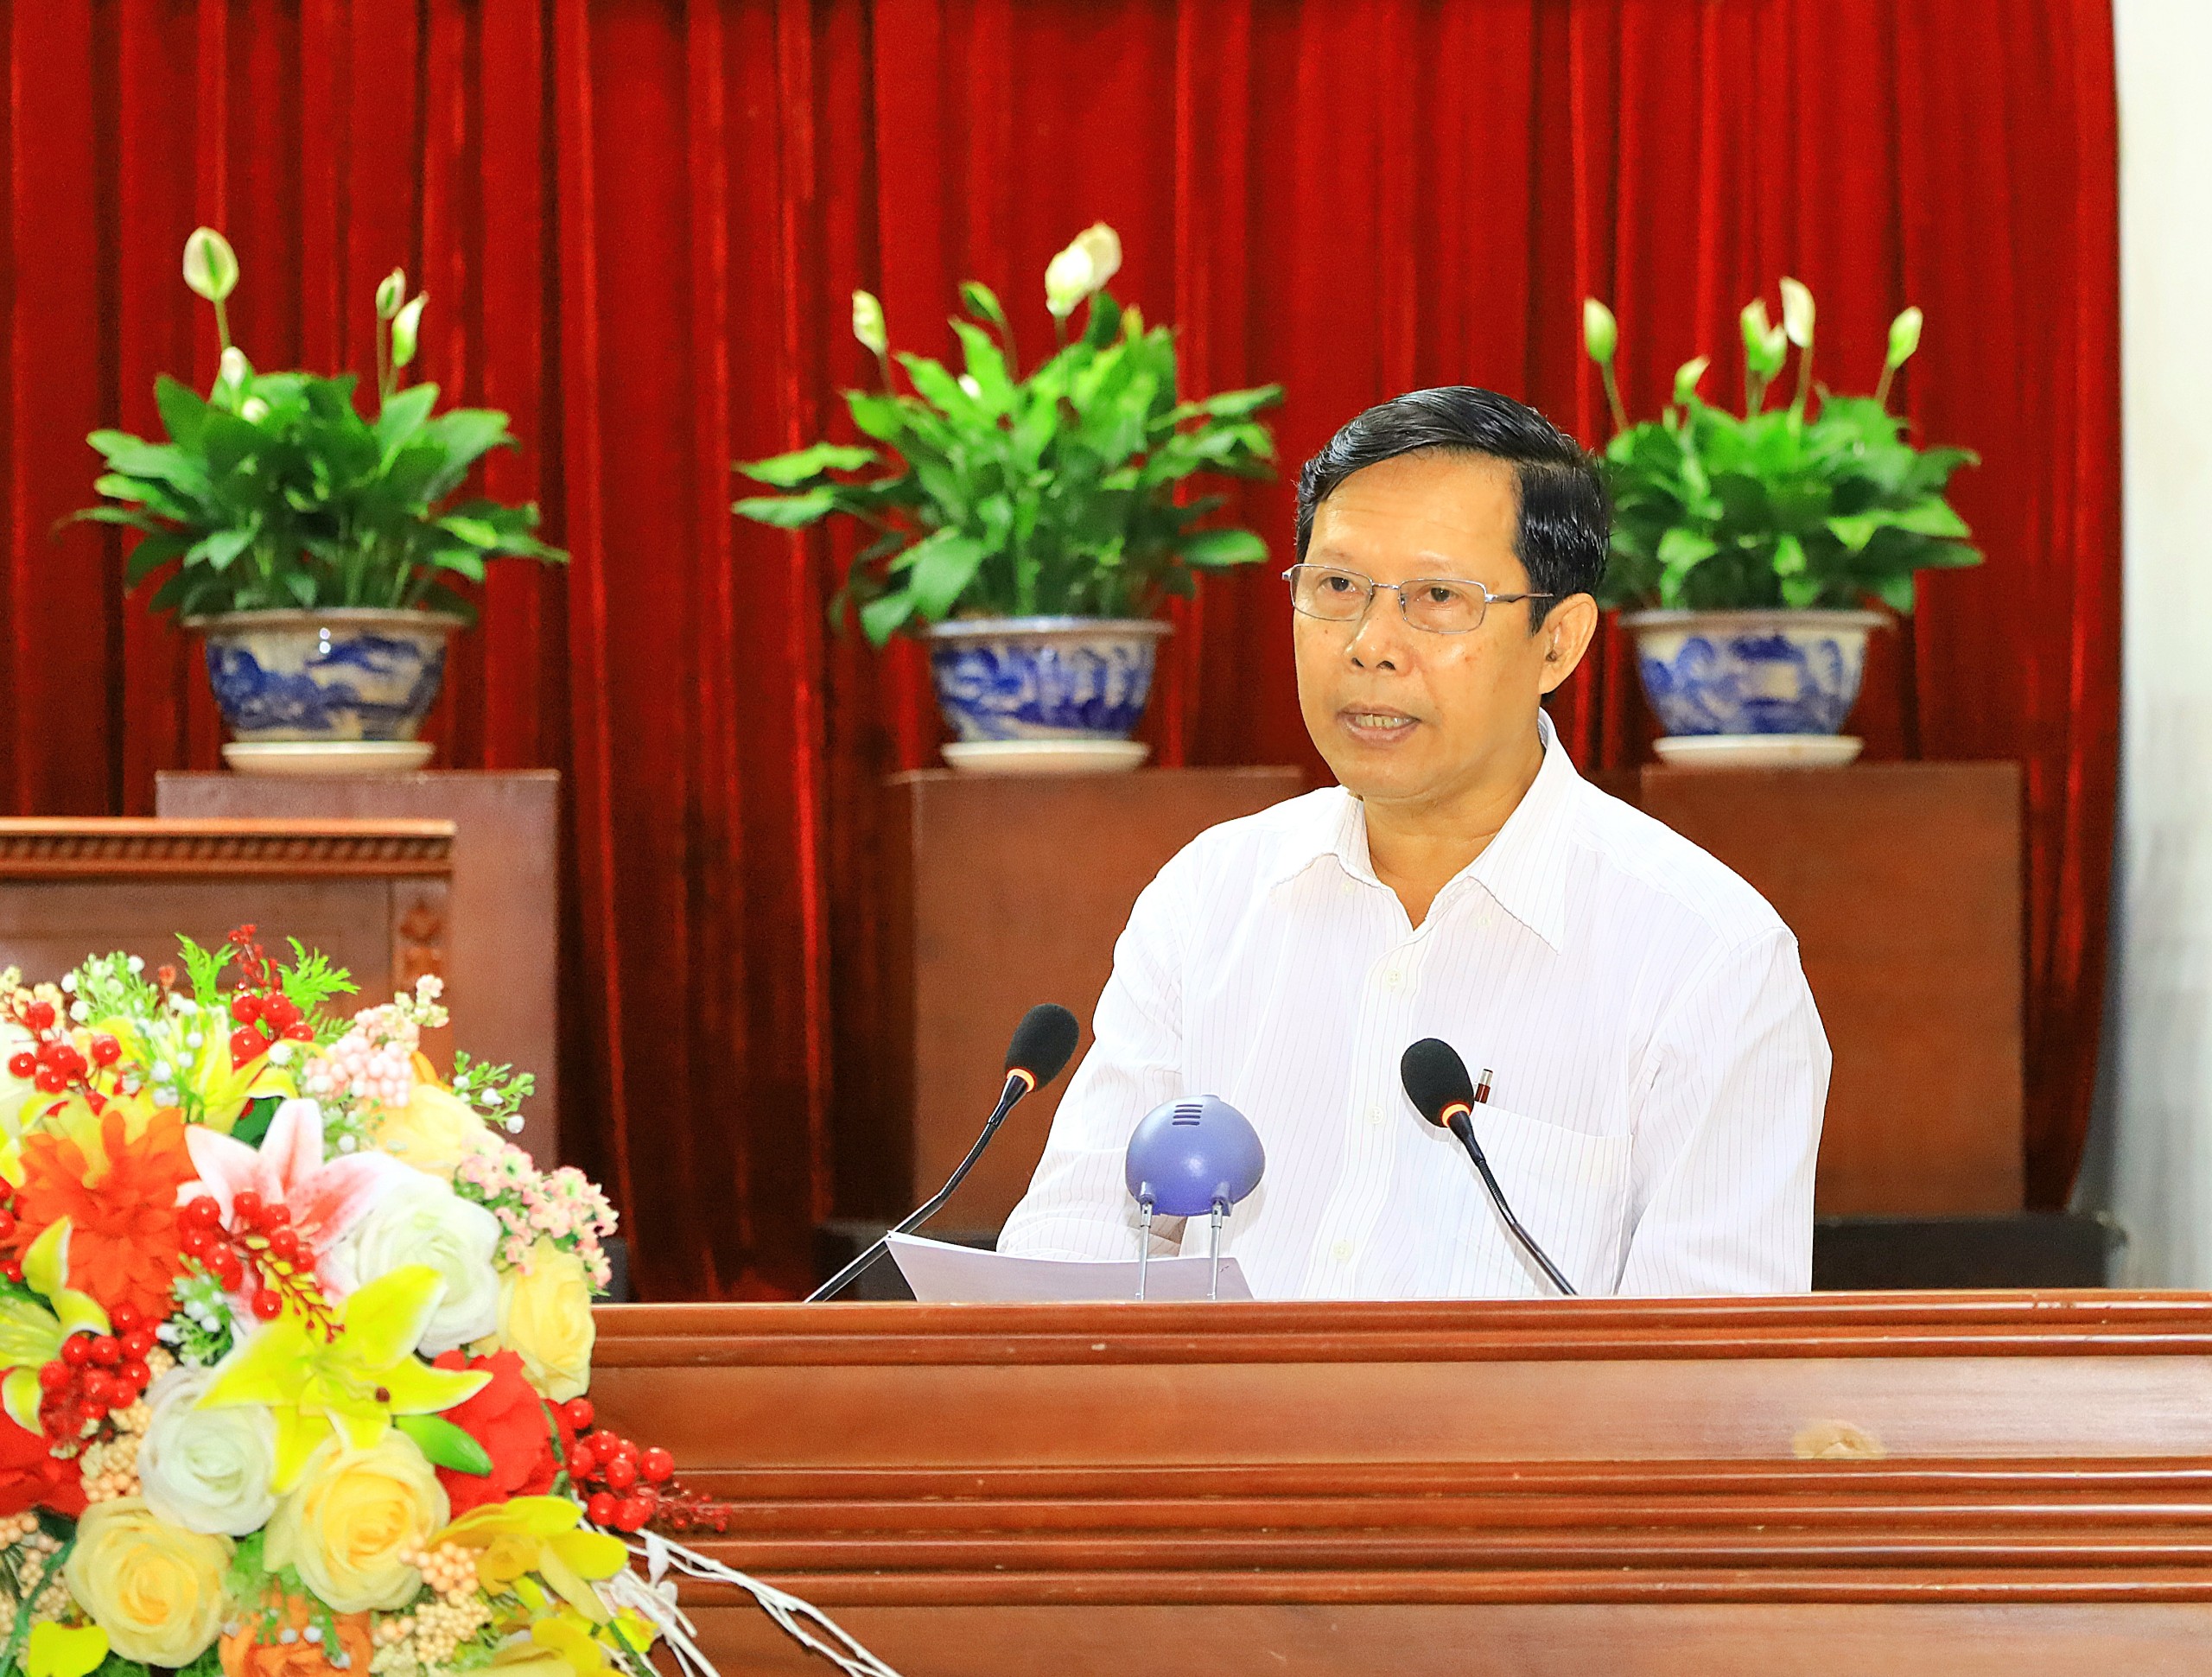 Ông Nguyễn Hoàng Ba - Bí thư Quận ủy Ô Môn phát biểu tham luận tại hội nghị.